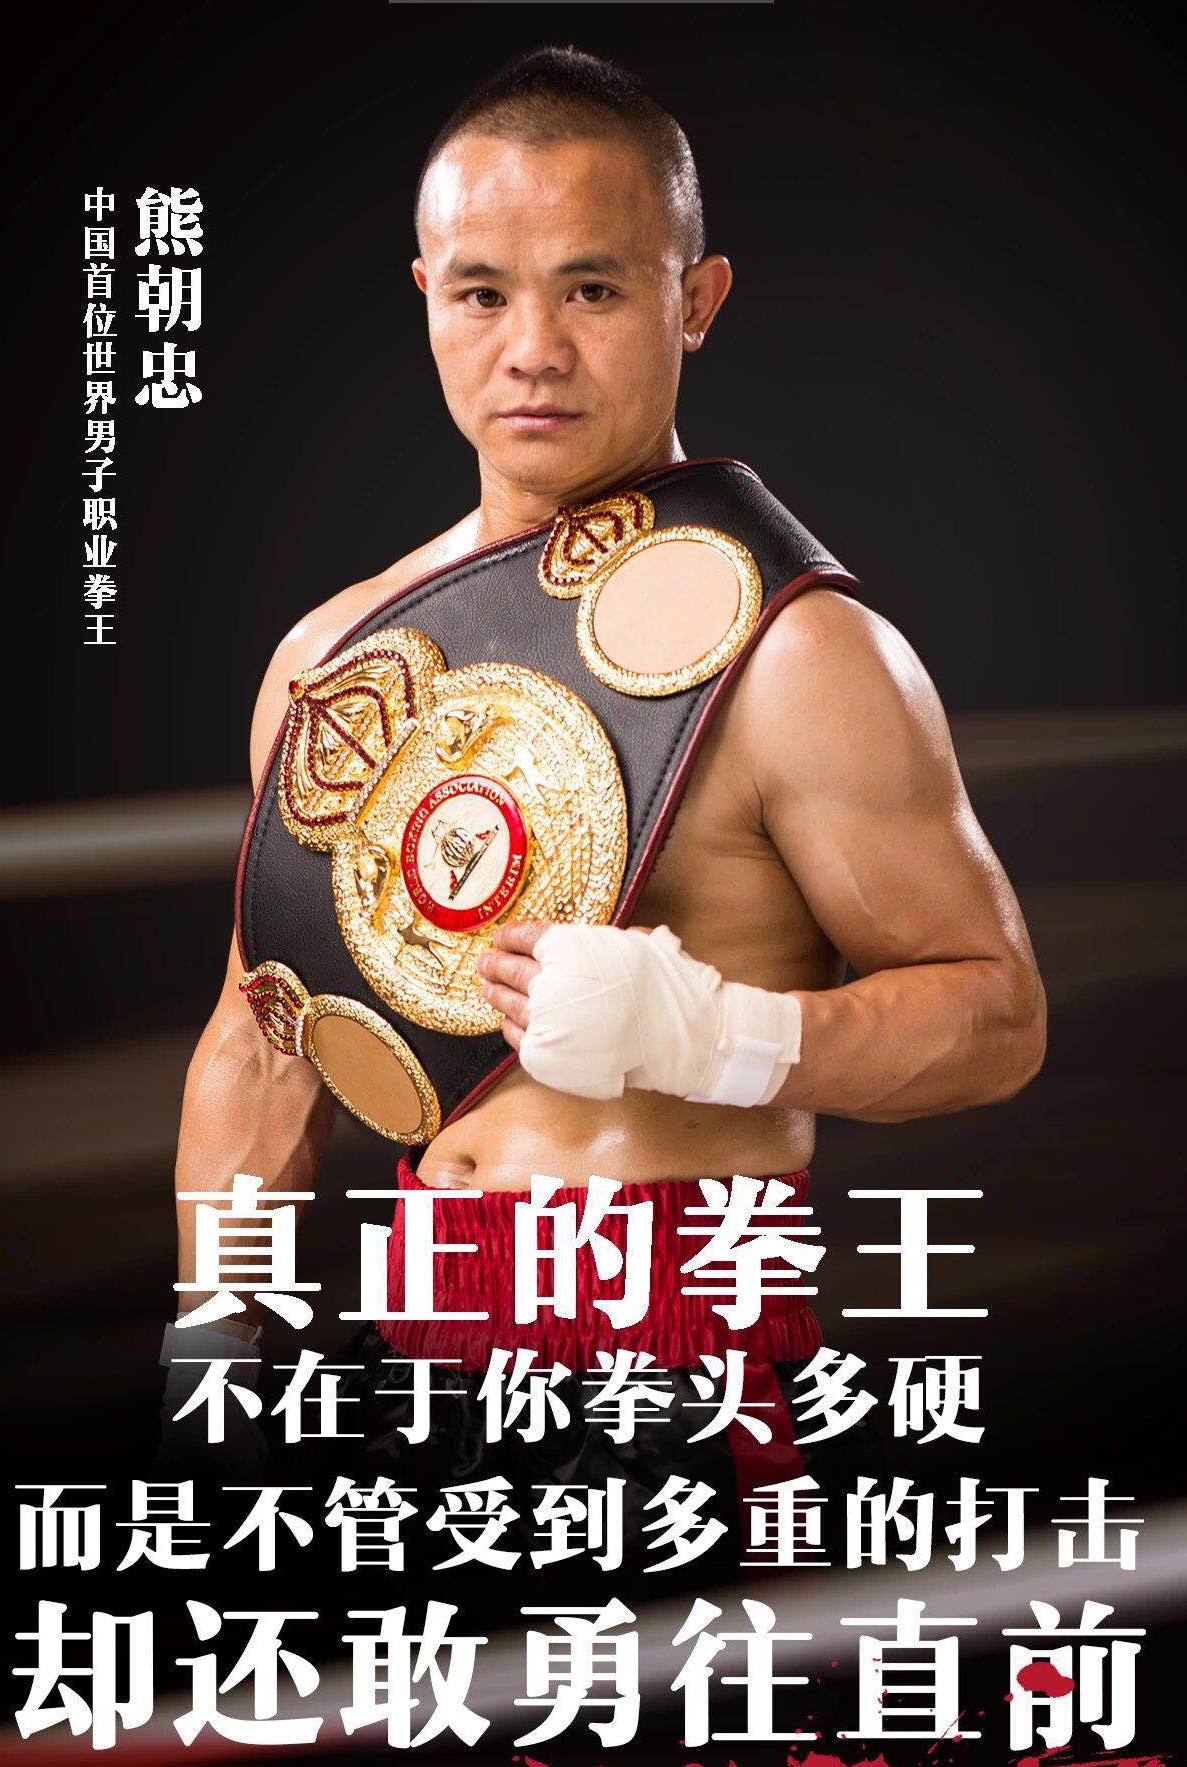 熊朝忠獲得WBA世界過度拳王金腰帶